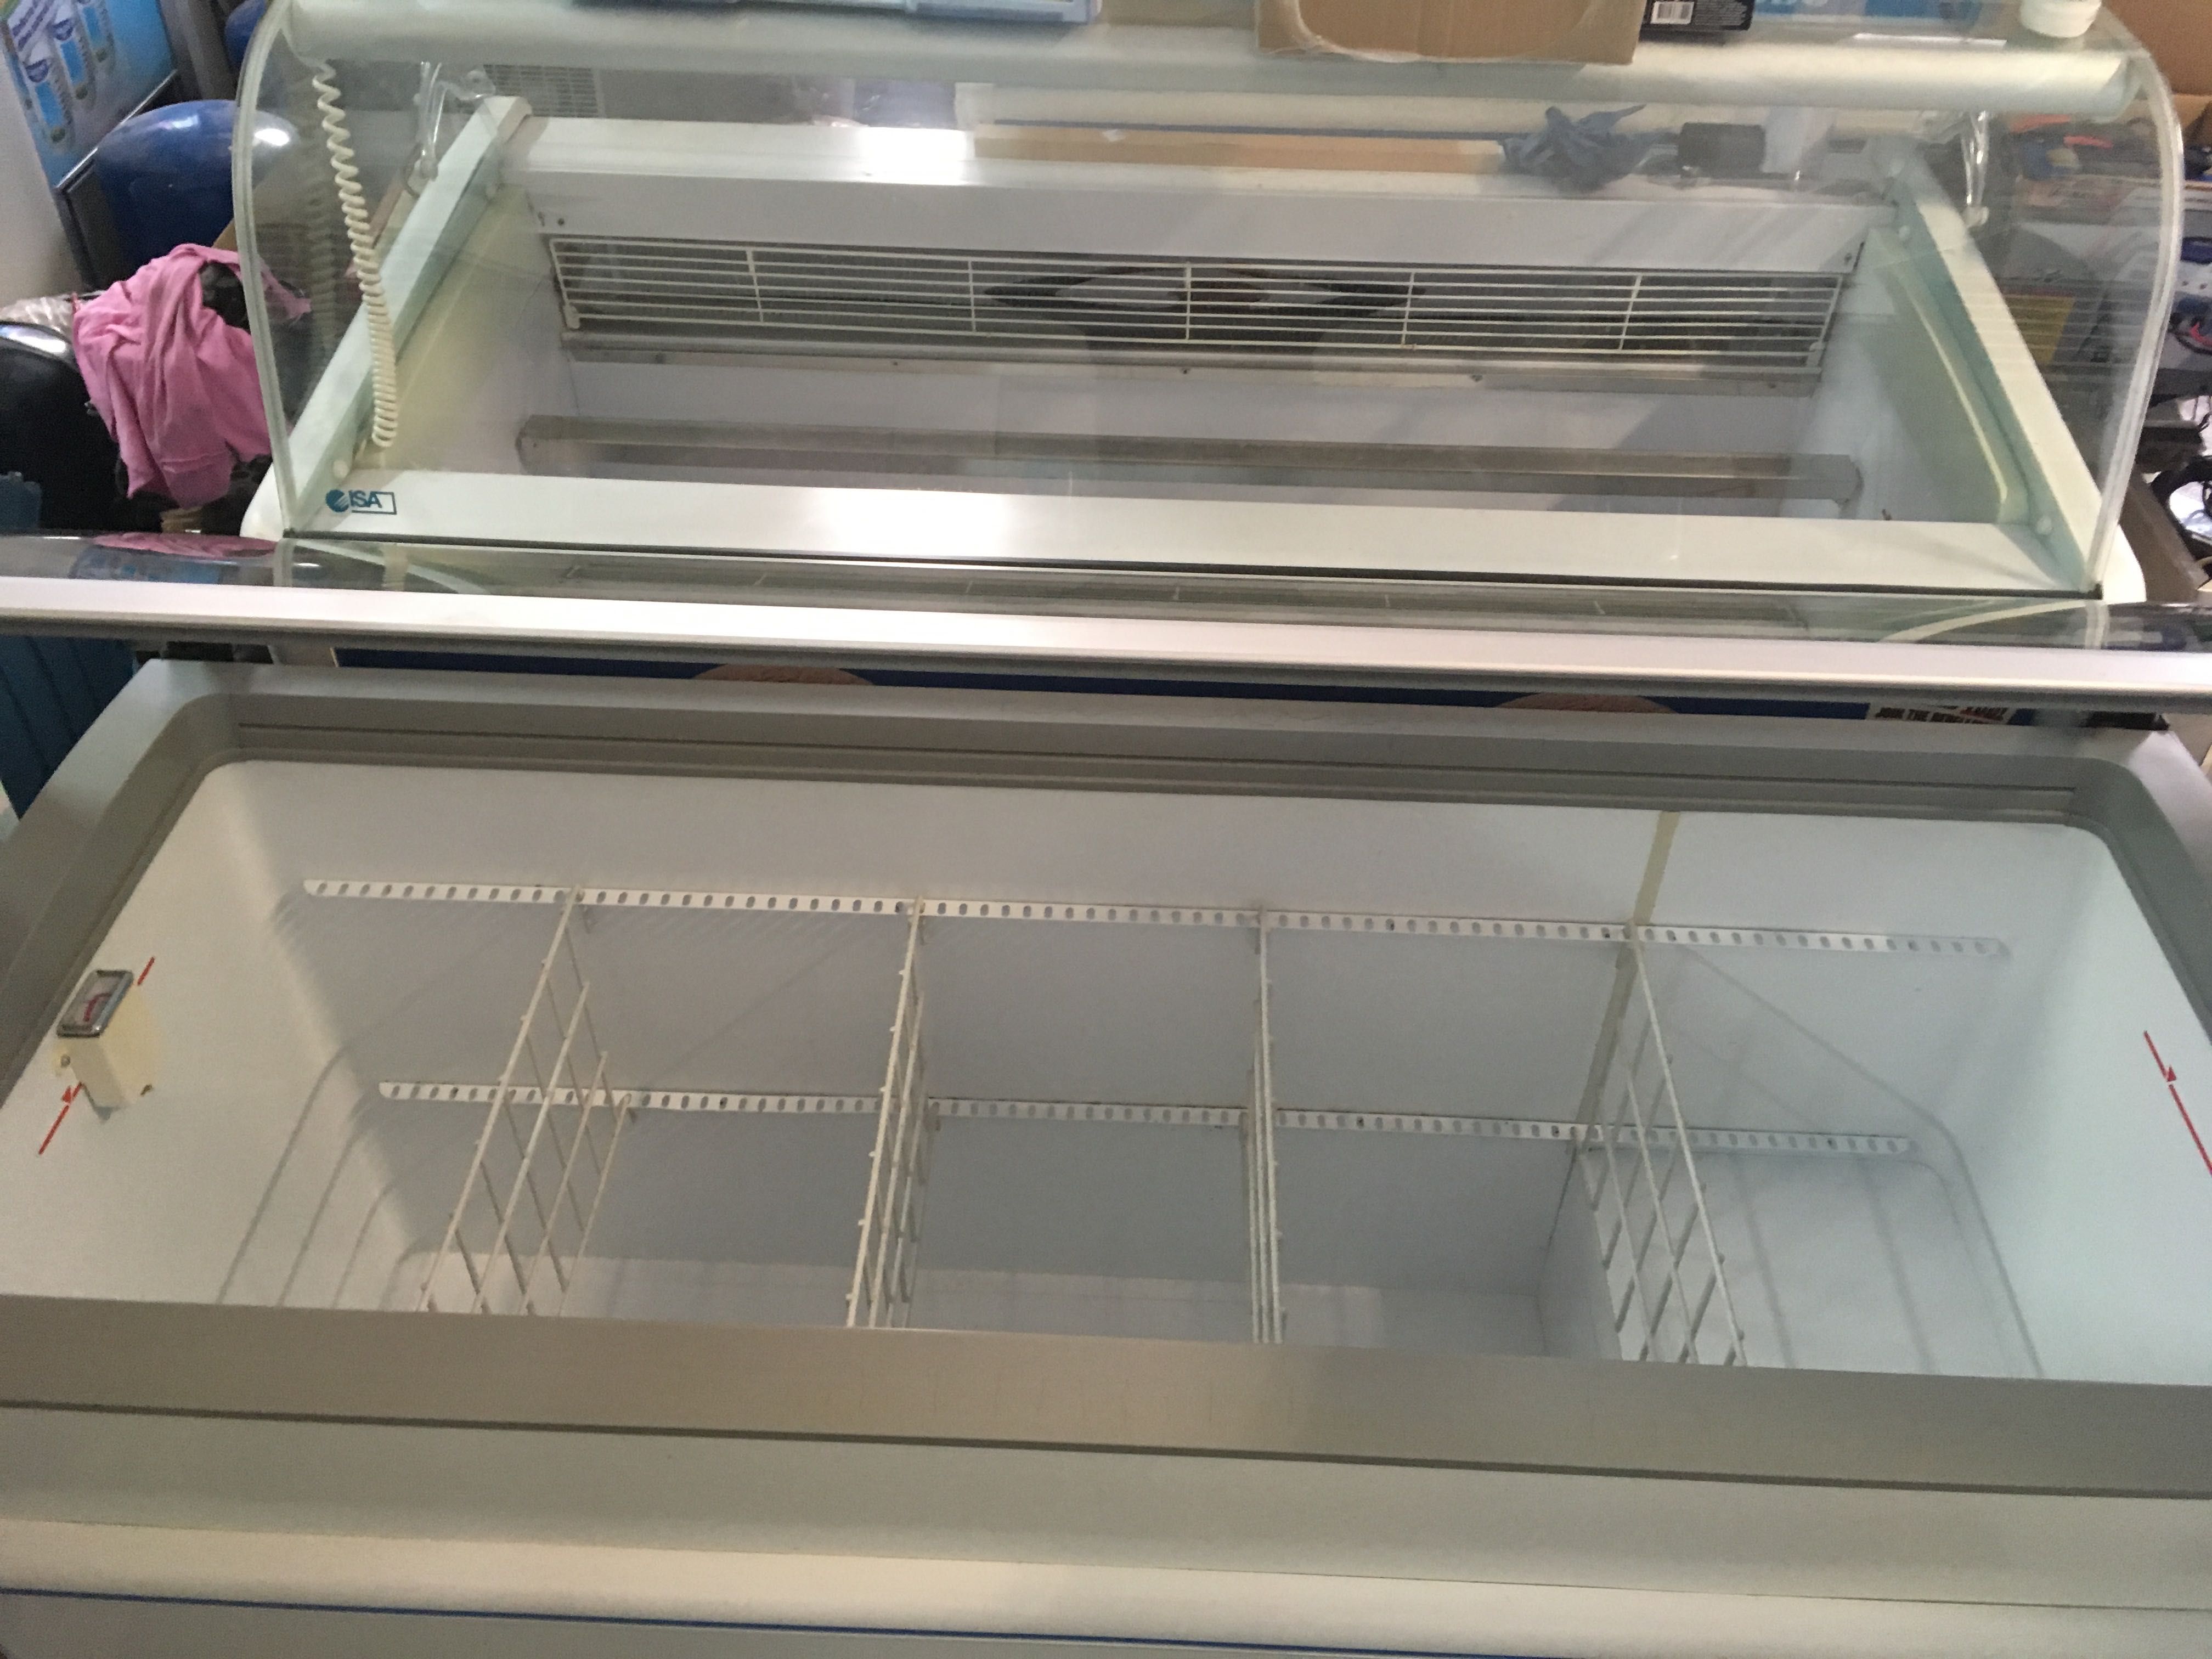 Lazi frigorific compartimentate model Costan